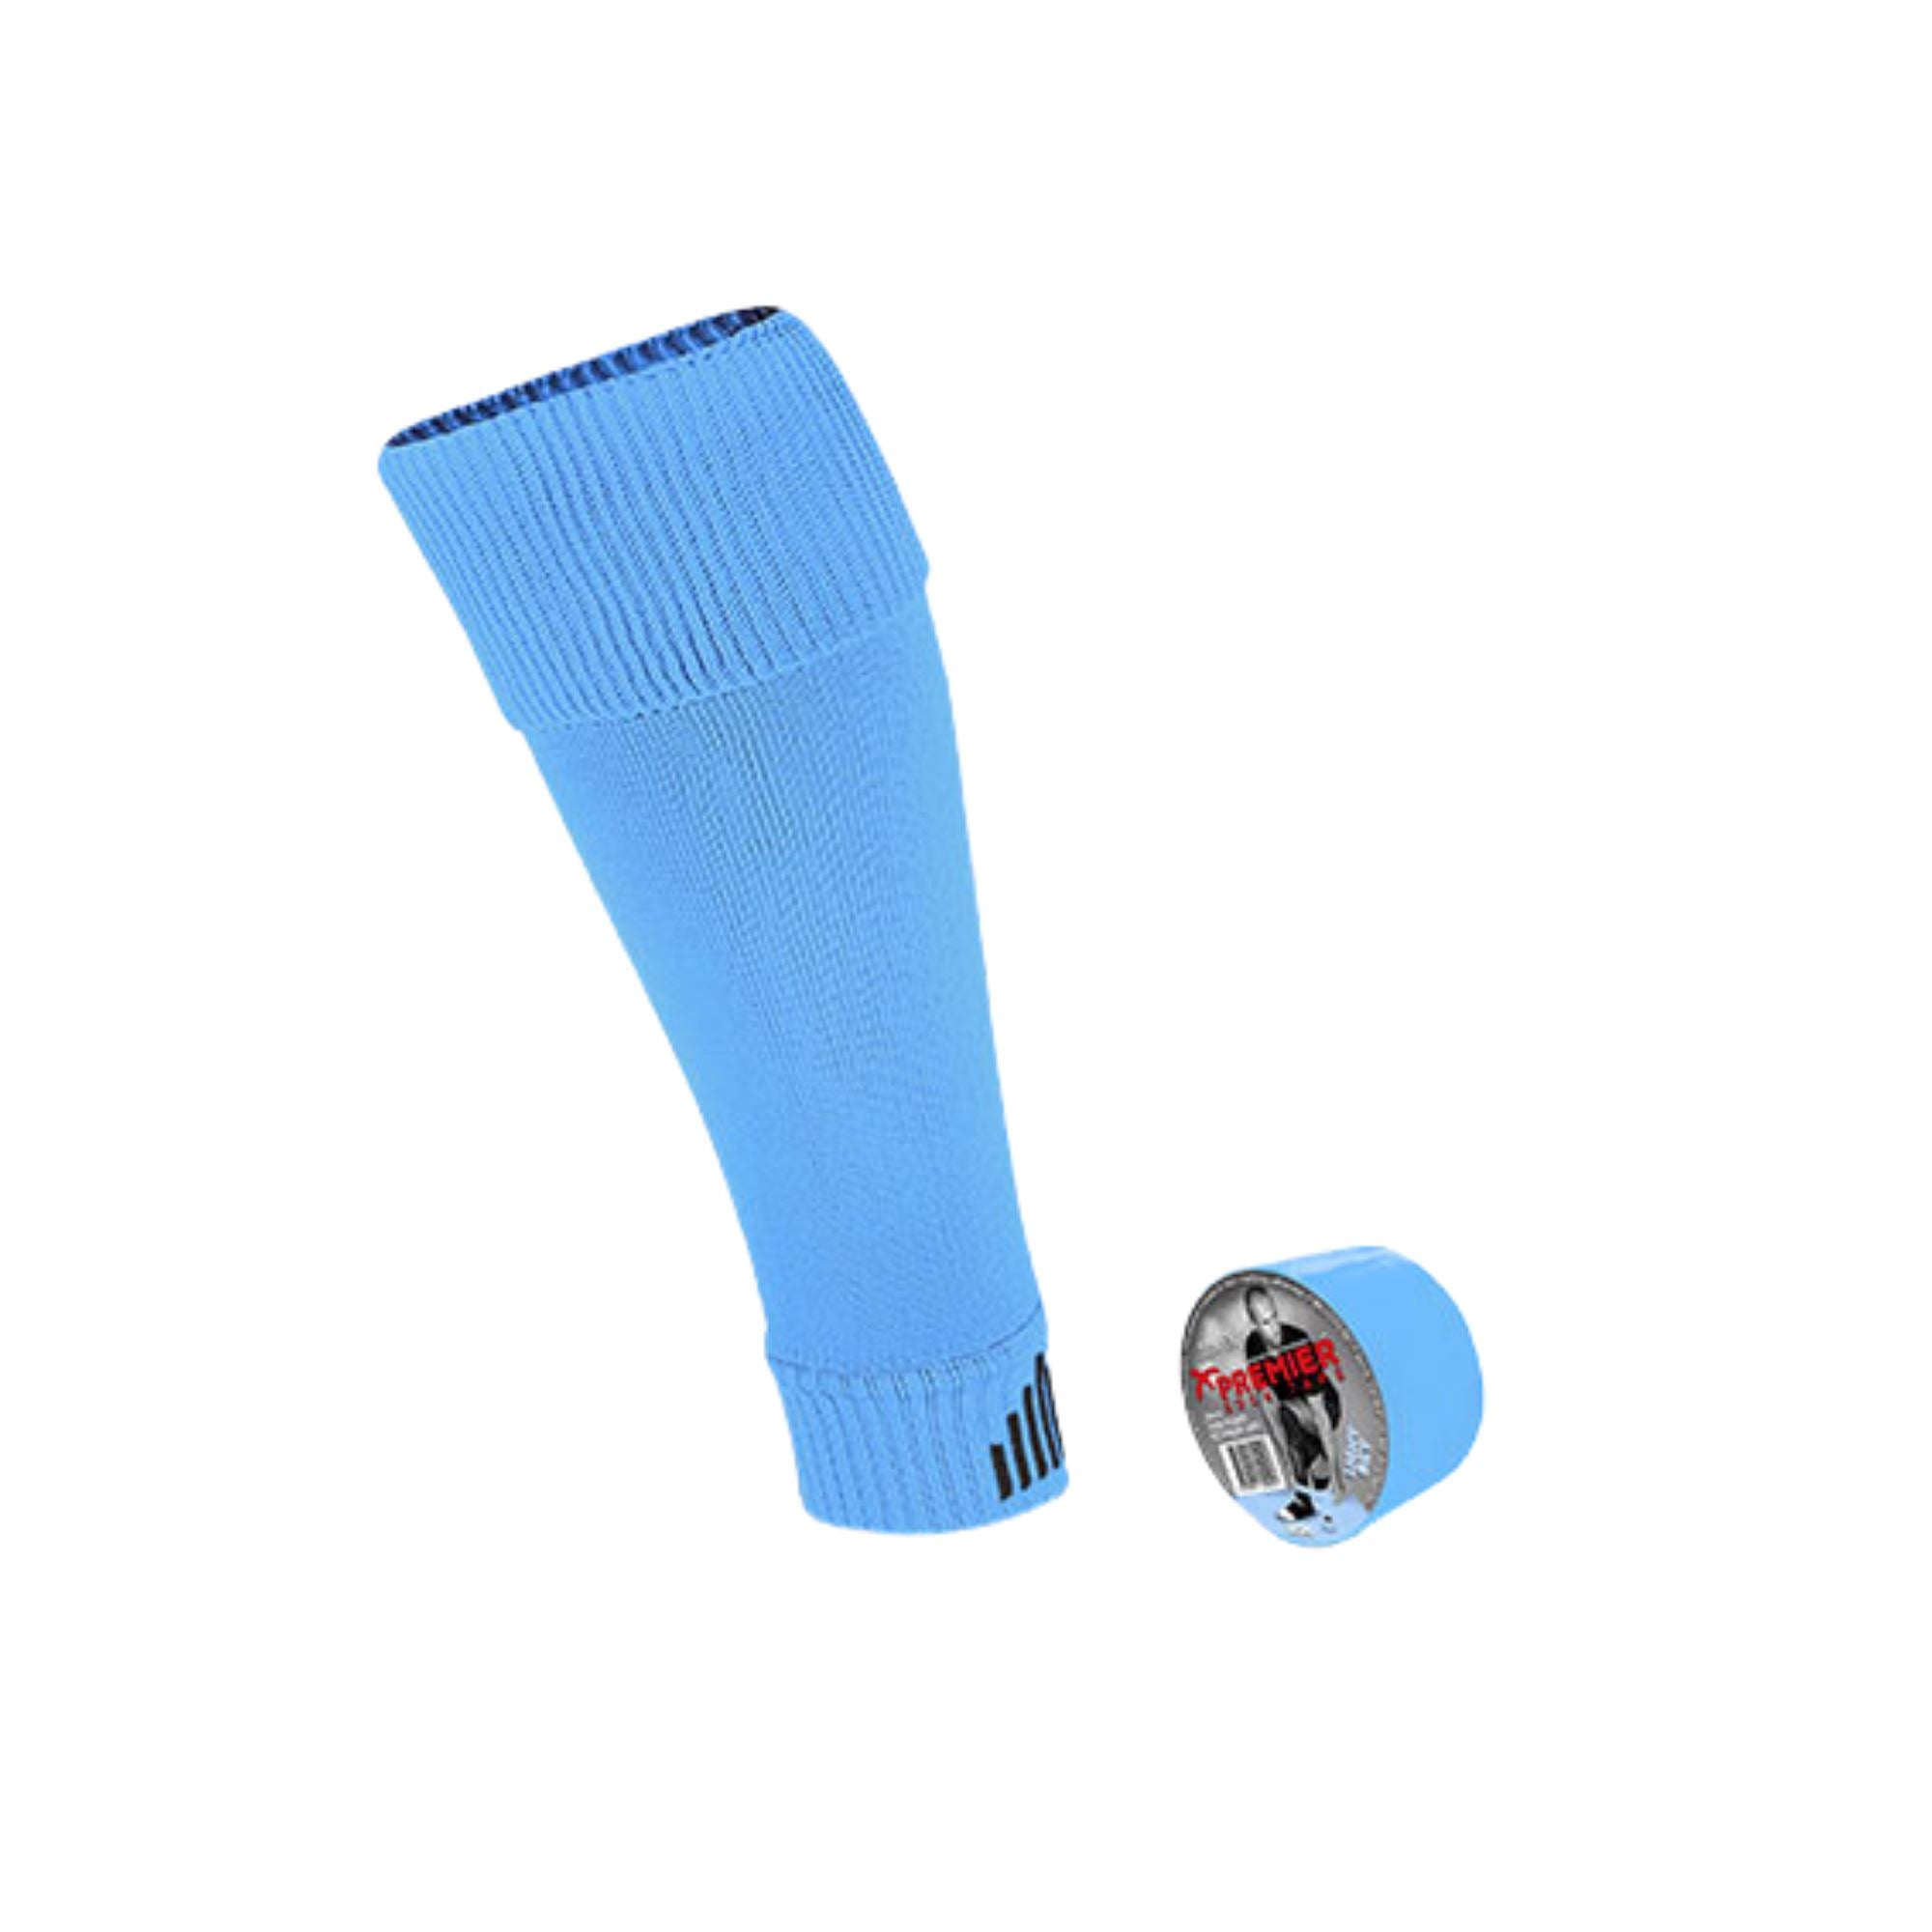 Tube Sock Leg kit by PST - PST